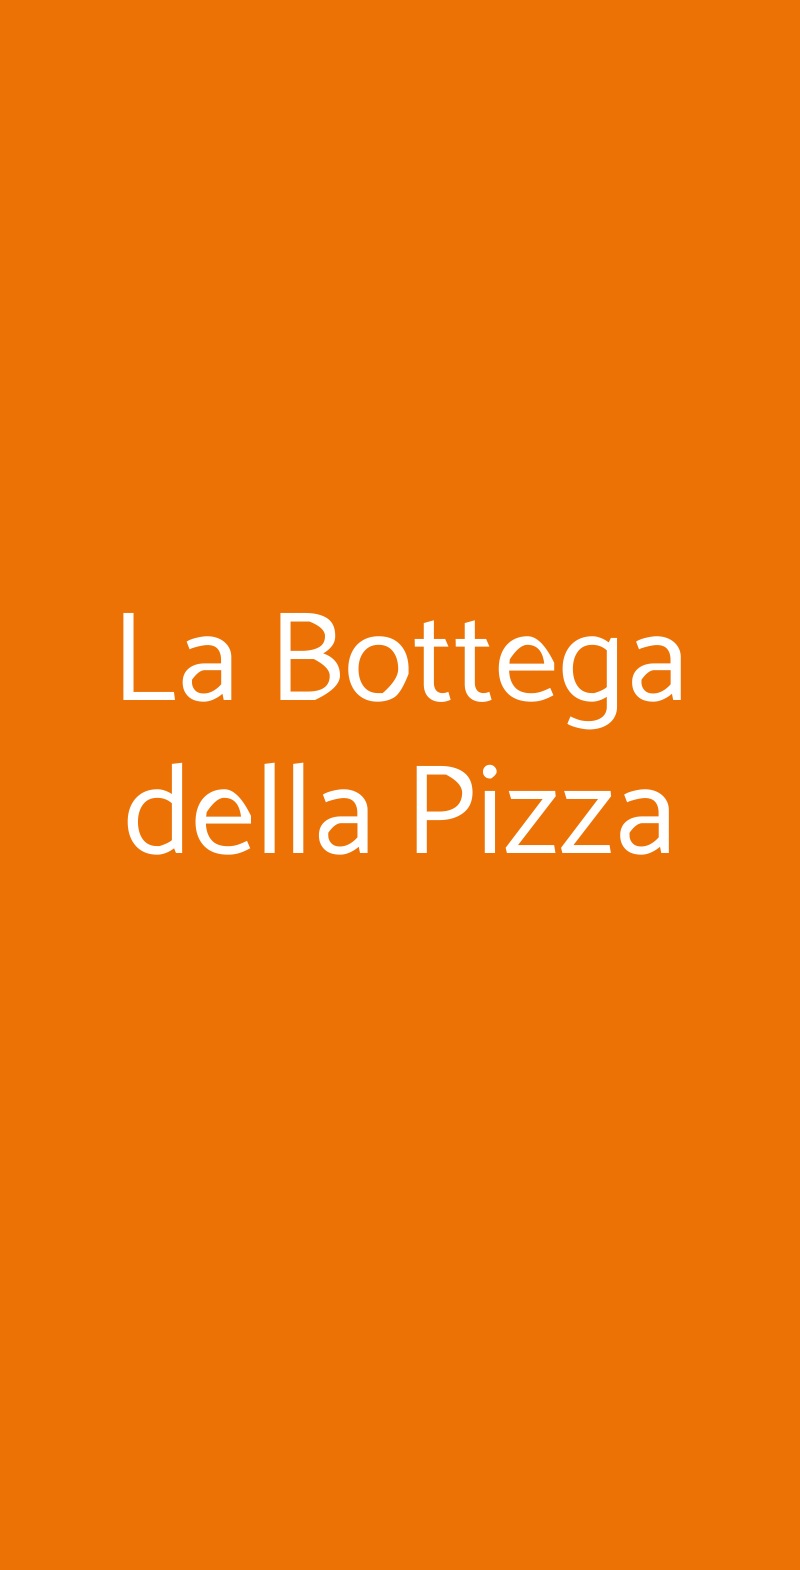 La Bottega della Pizza Melito di Napoli menù 1 pagina